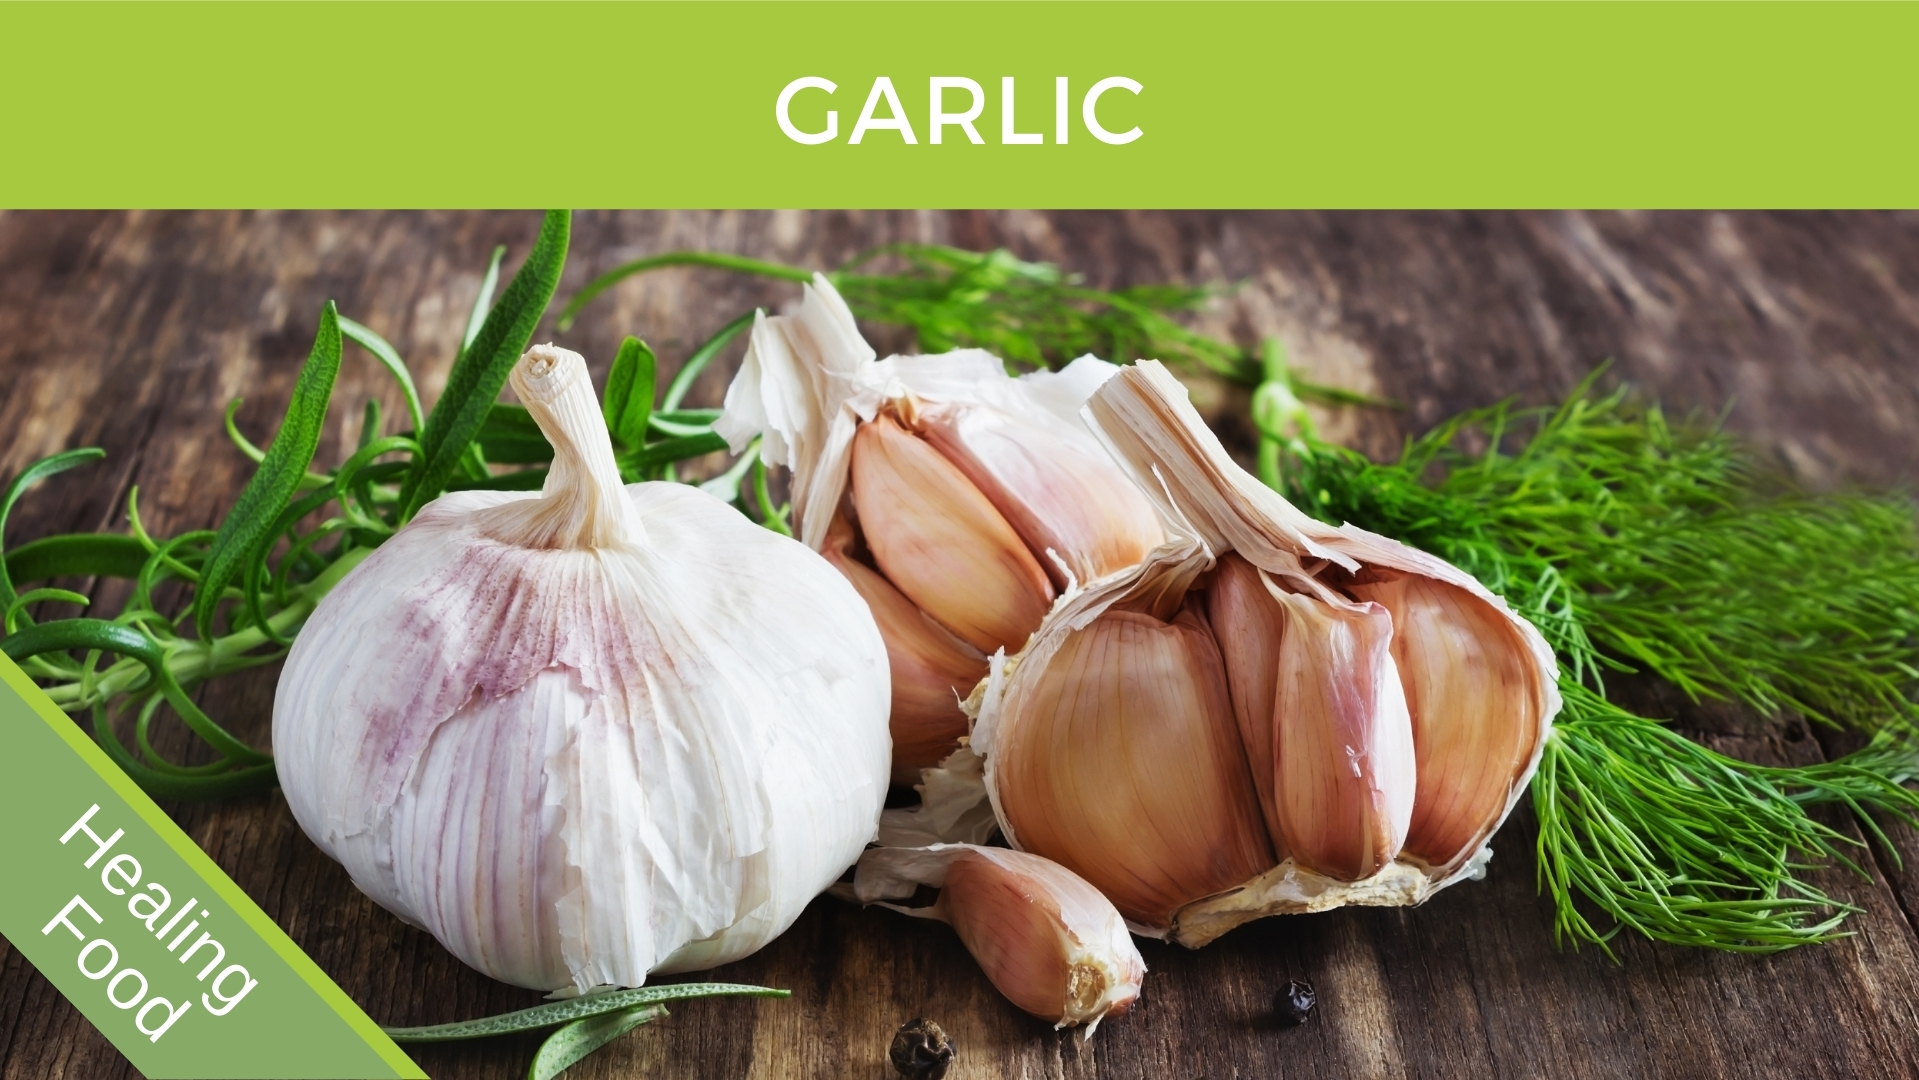 https://www.brettelliott.com/wp-content/uploads/2017/04/Garlic-Cloves.jpg